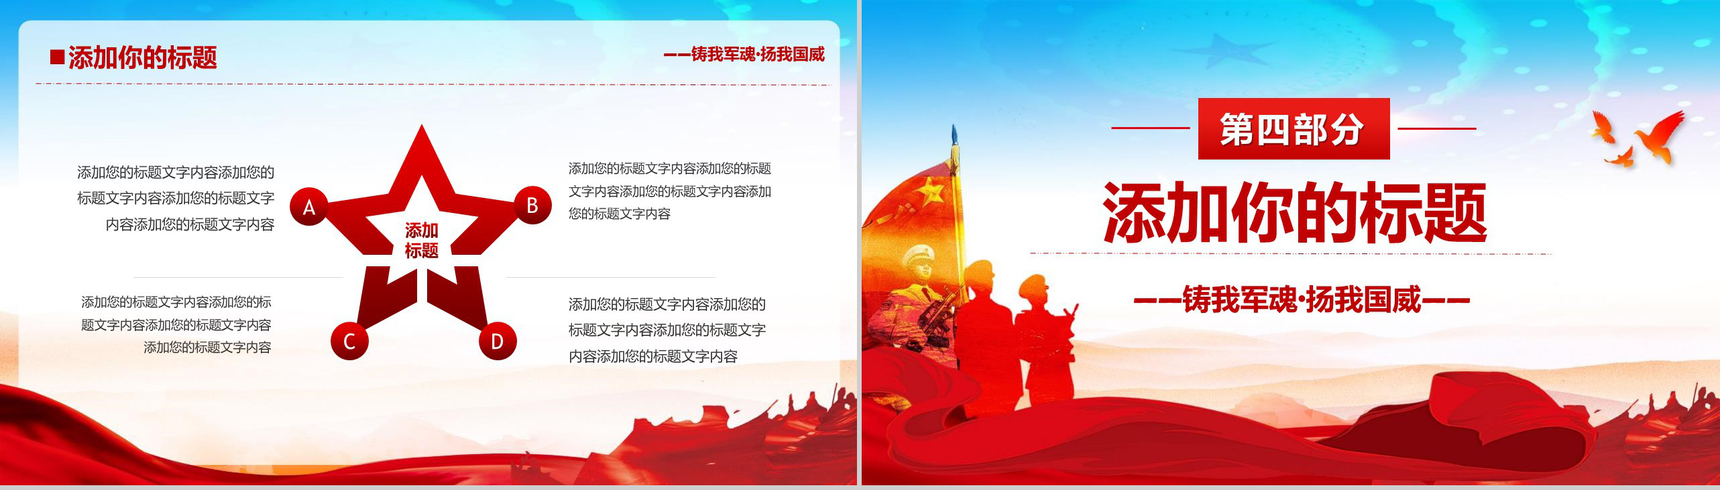 中国海军成立70周年活动现场PPT模板-10